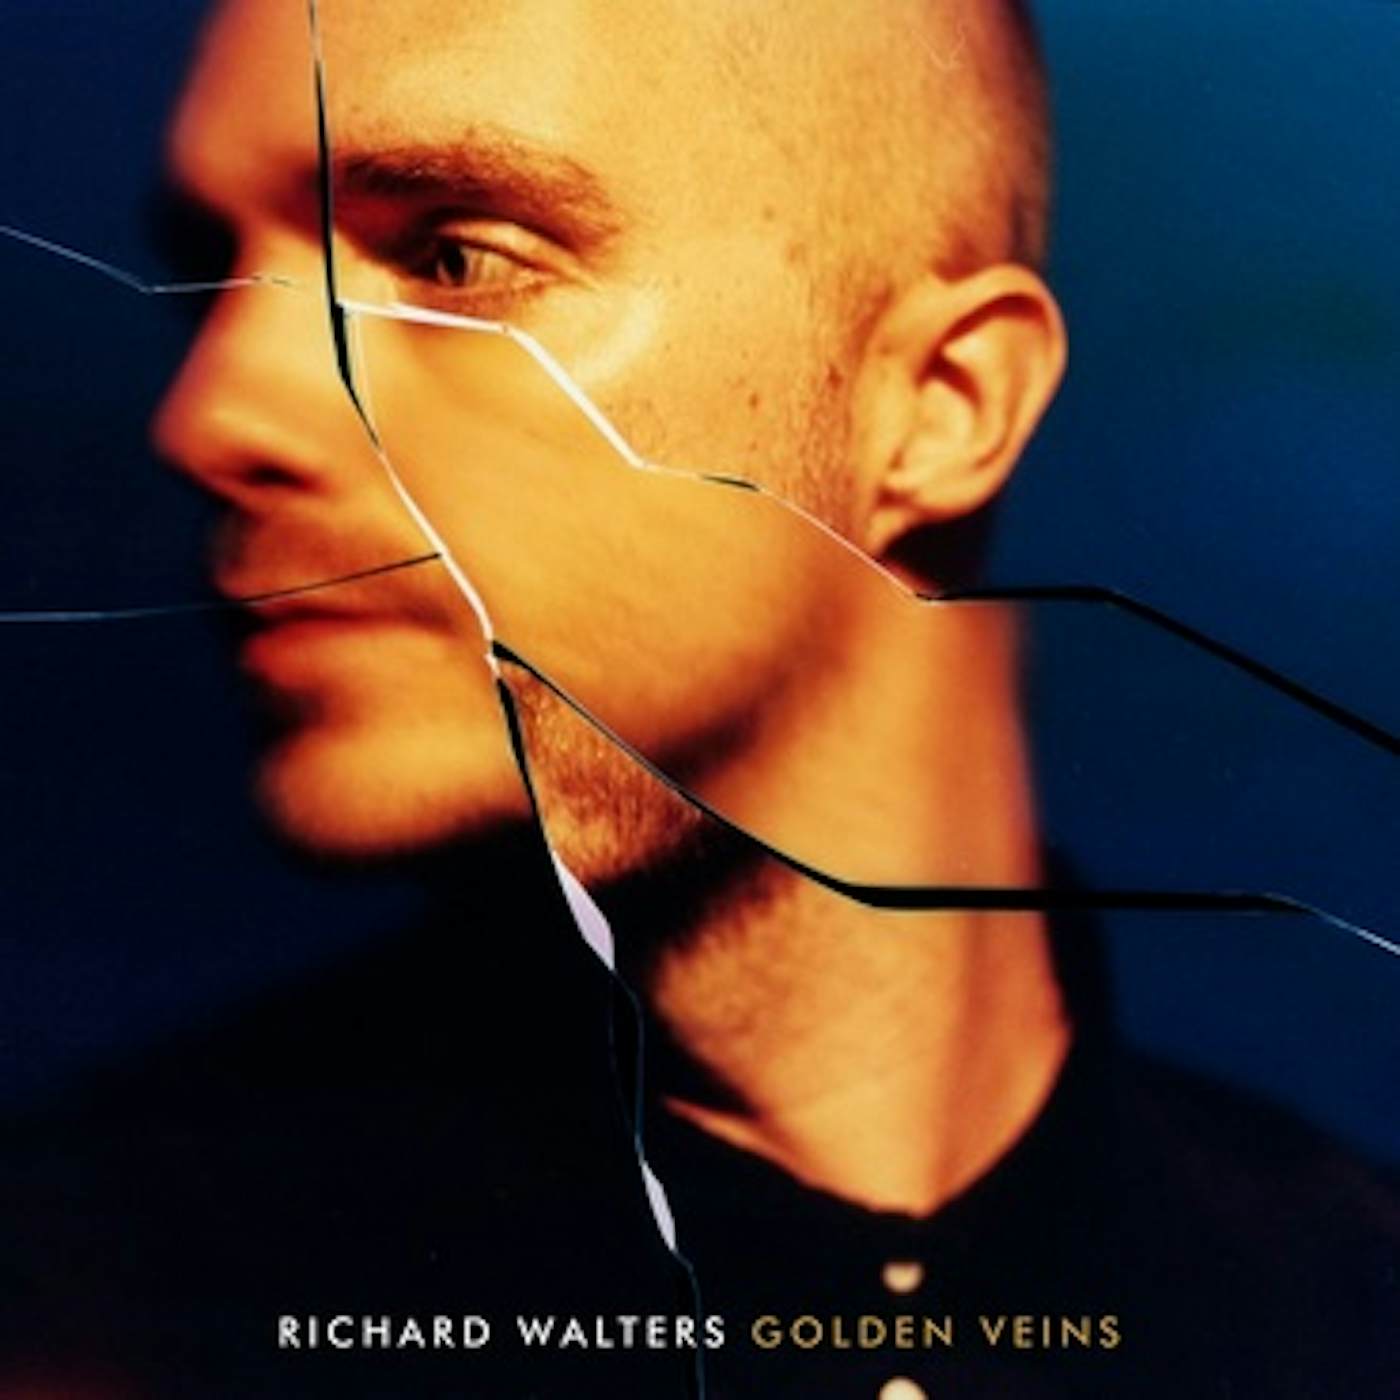 Richard Walters Golden Veins Vinyl Record